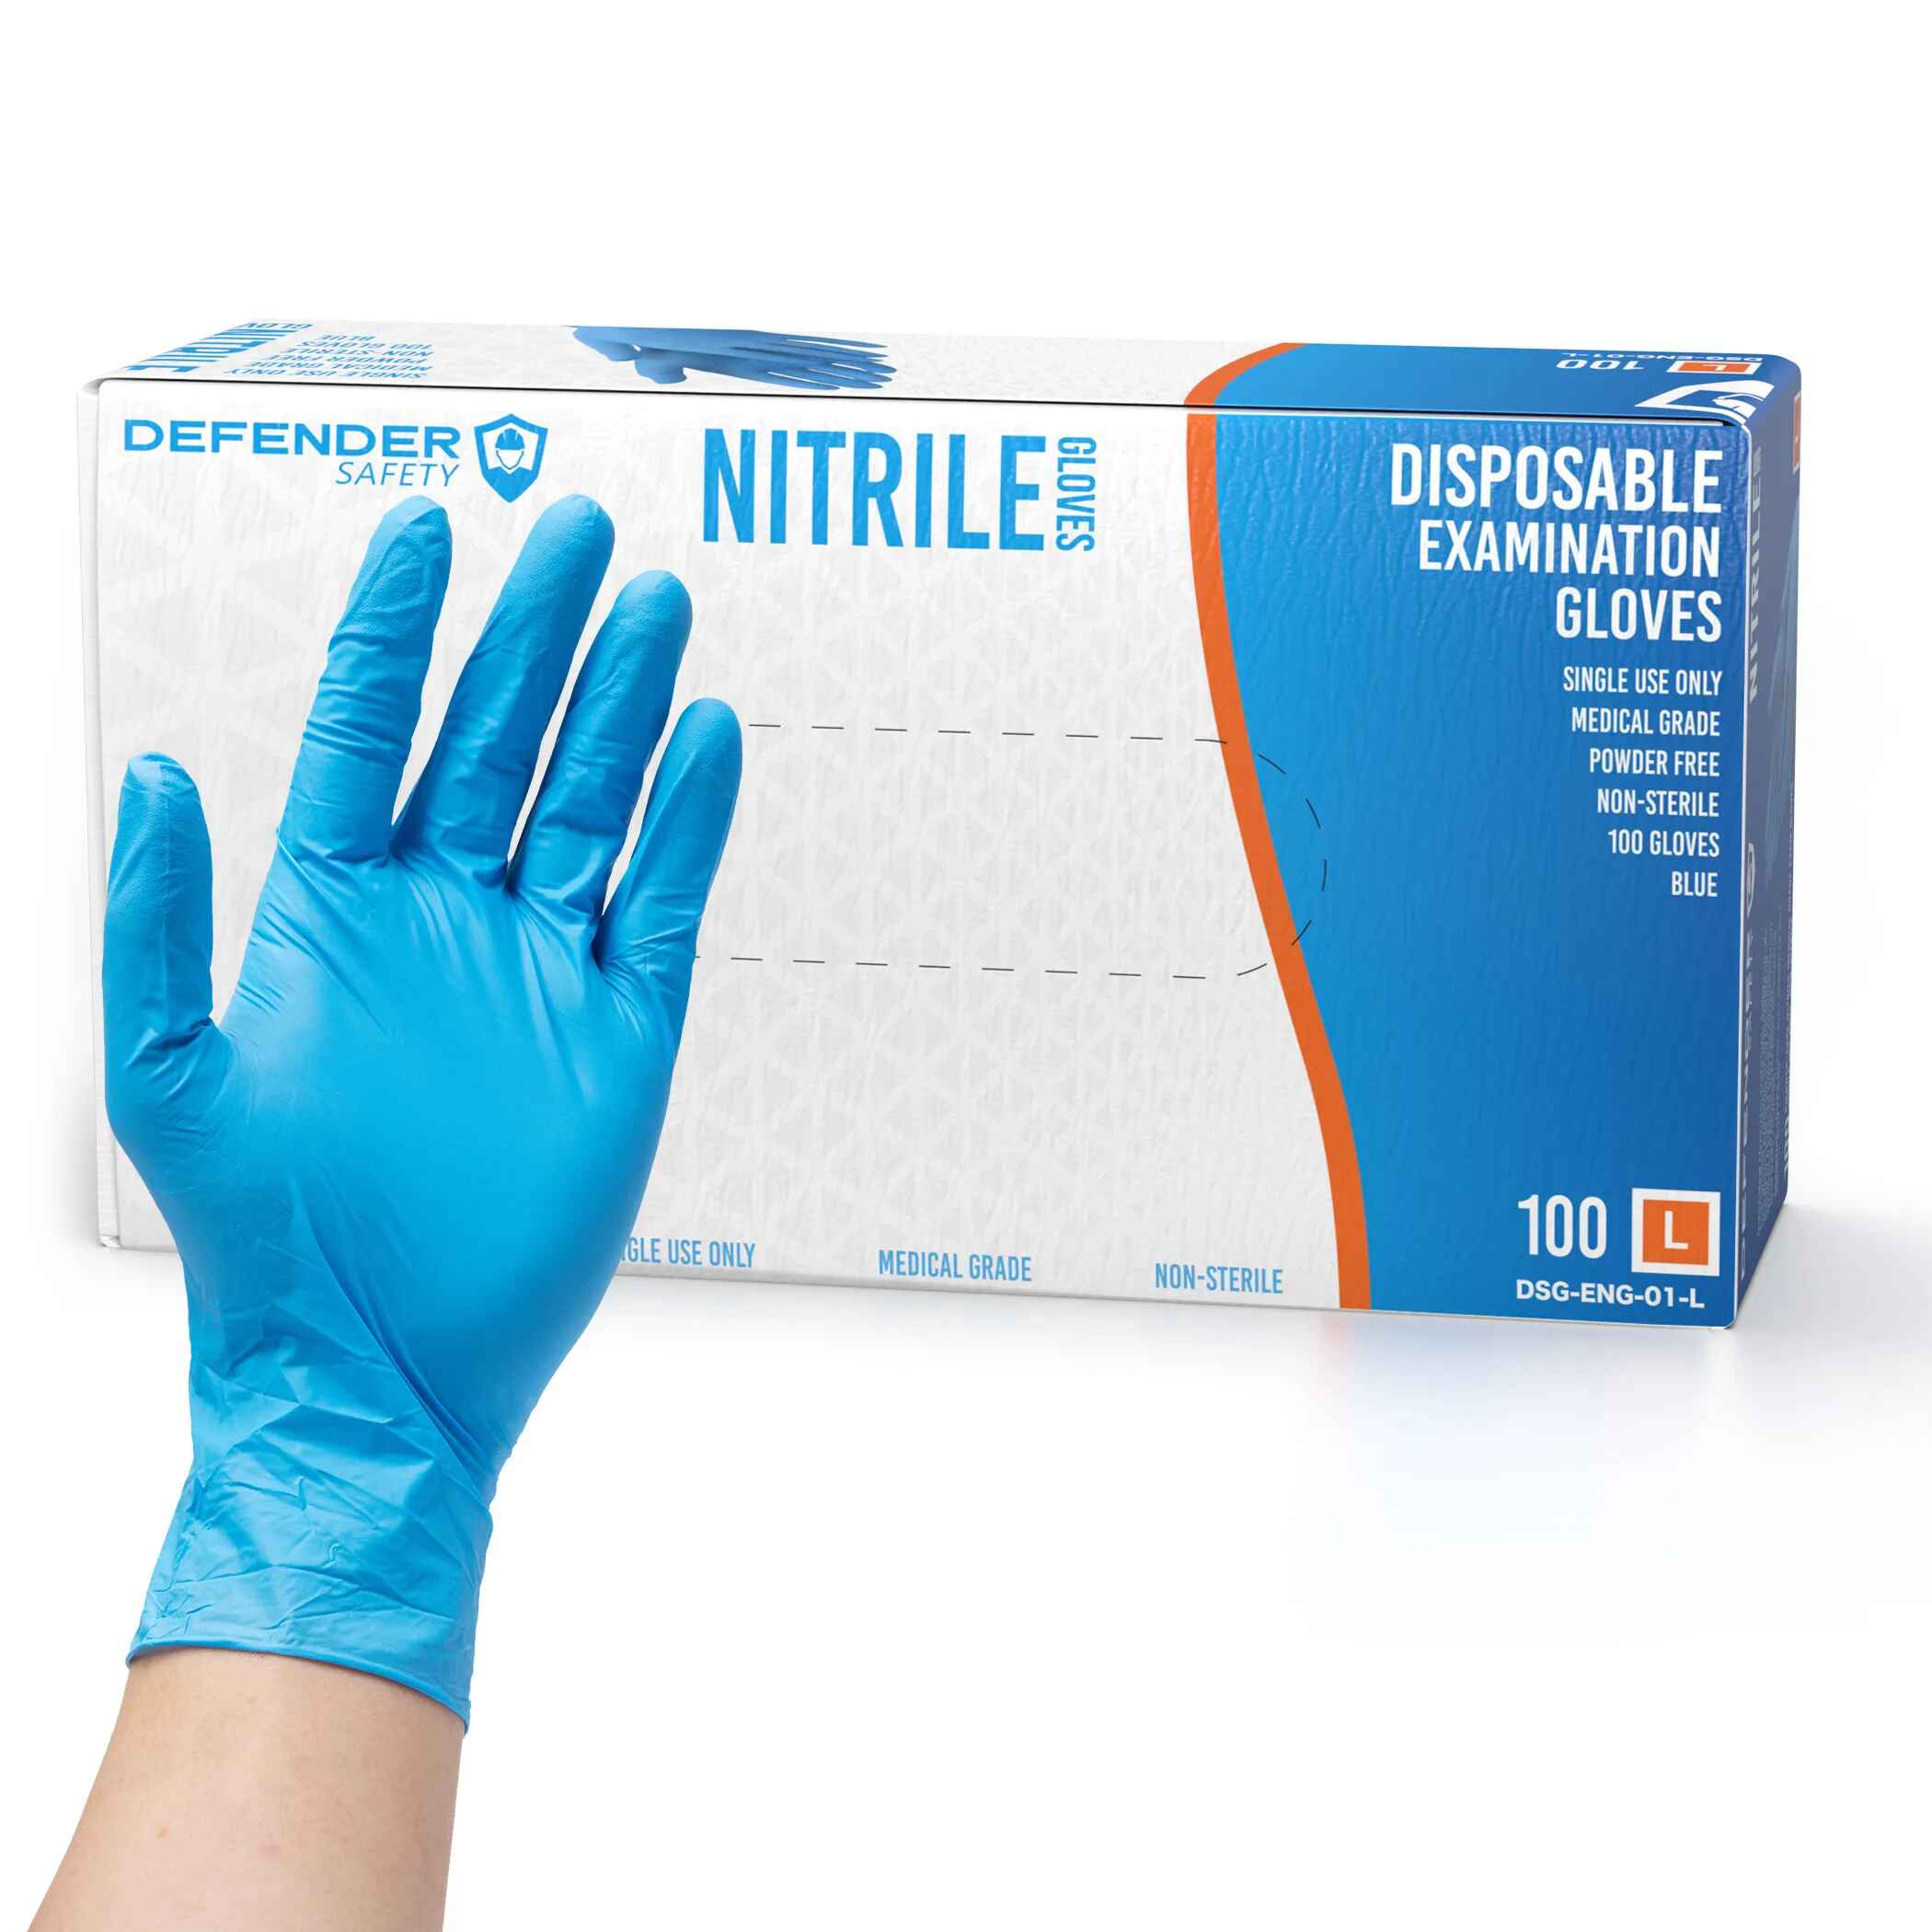 https://defendersafety.com/cdn/shop/products/35-mil-blue-nitrile-gloves-medical-grade-35-mil-powder-free-blue-376108.jpg?v=1690825028&width=2100